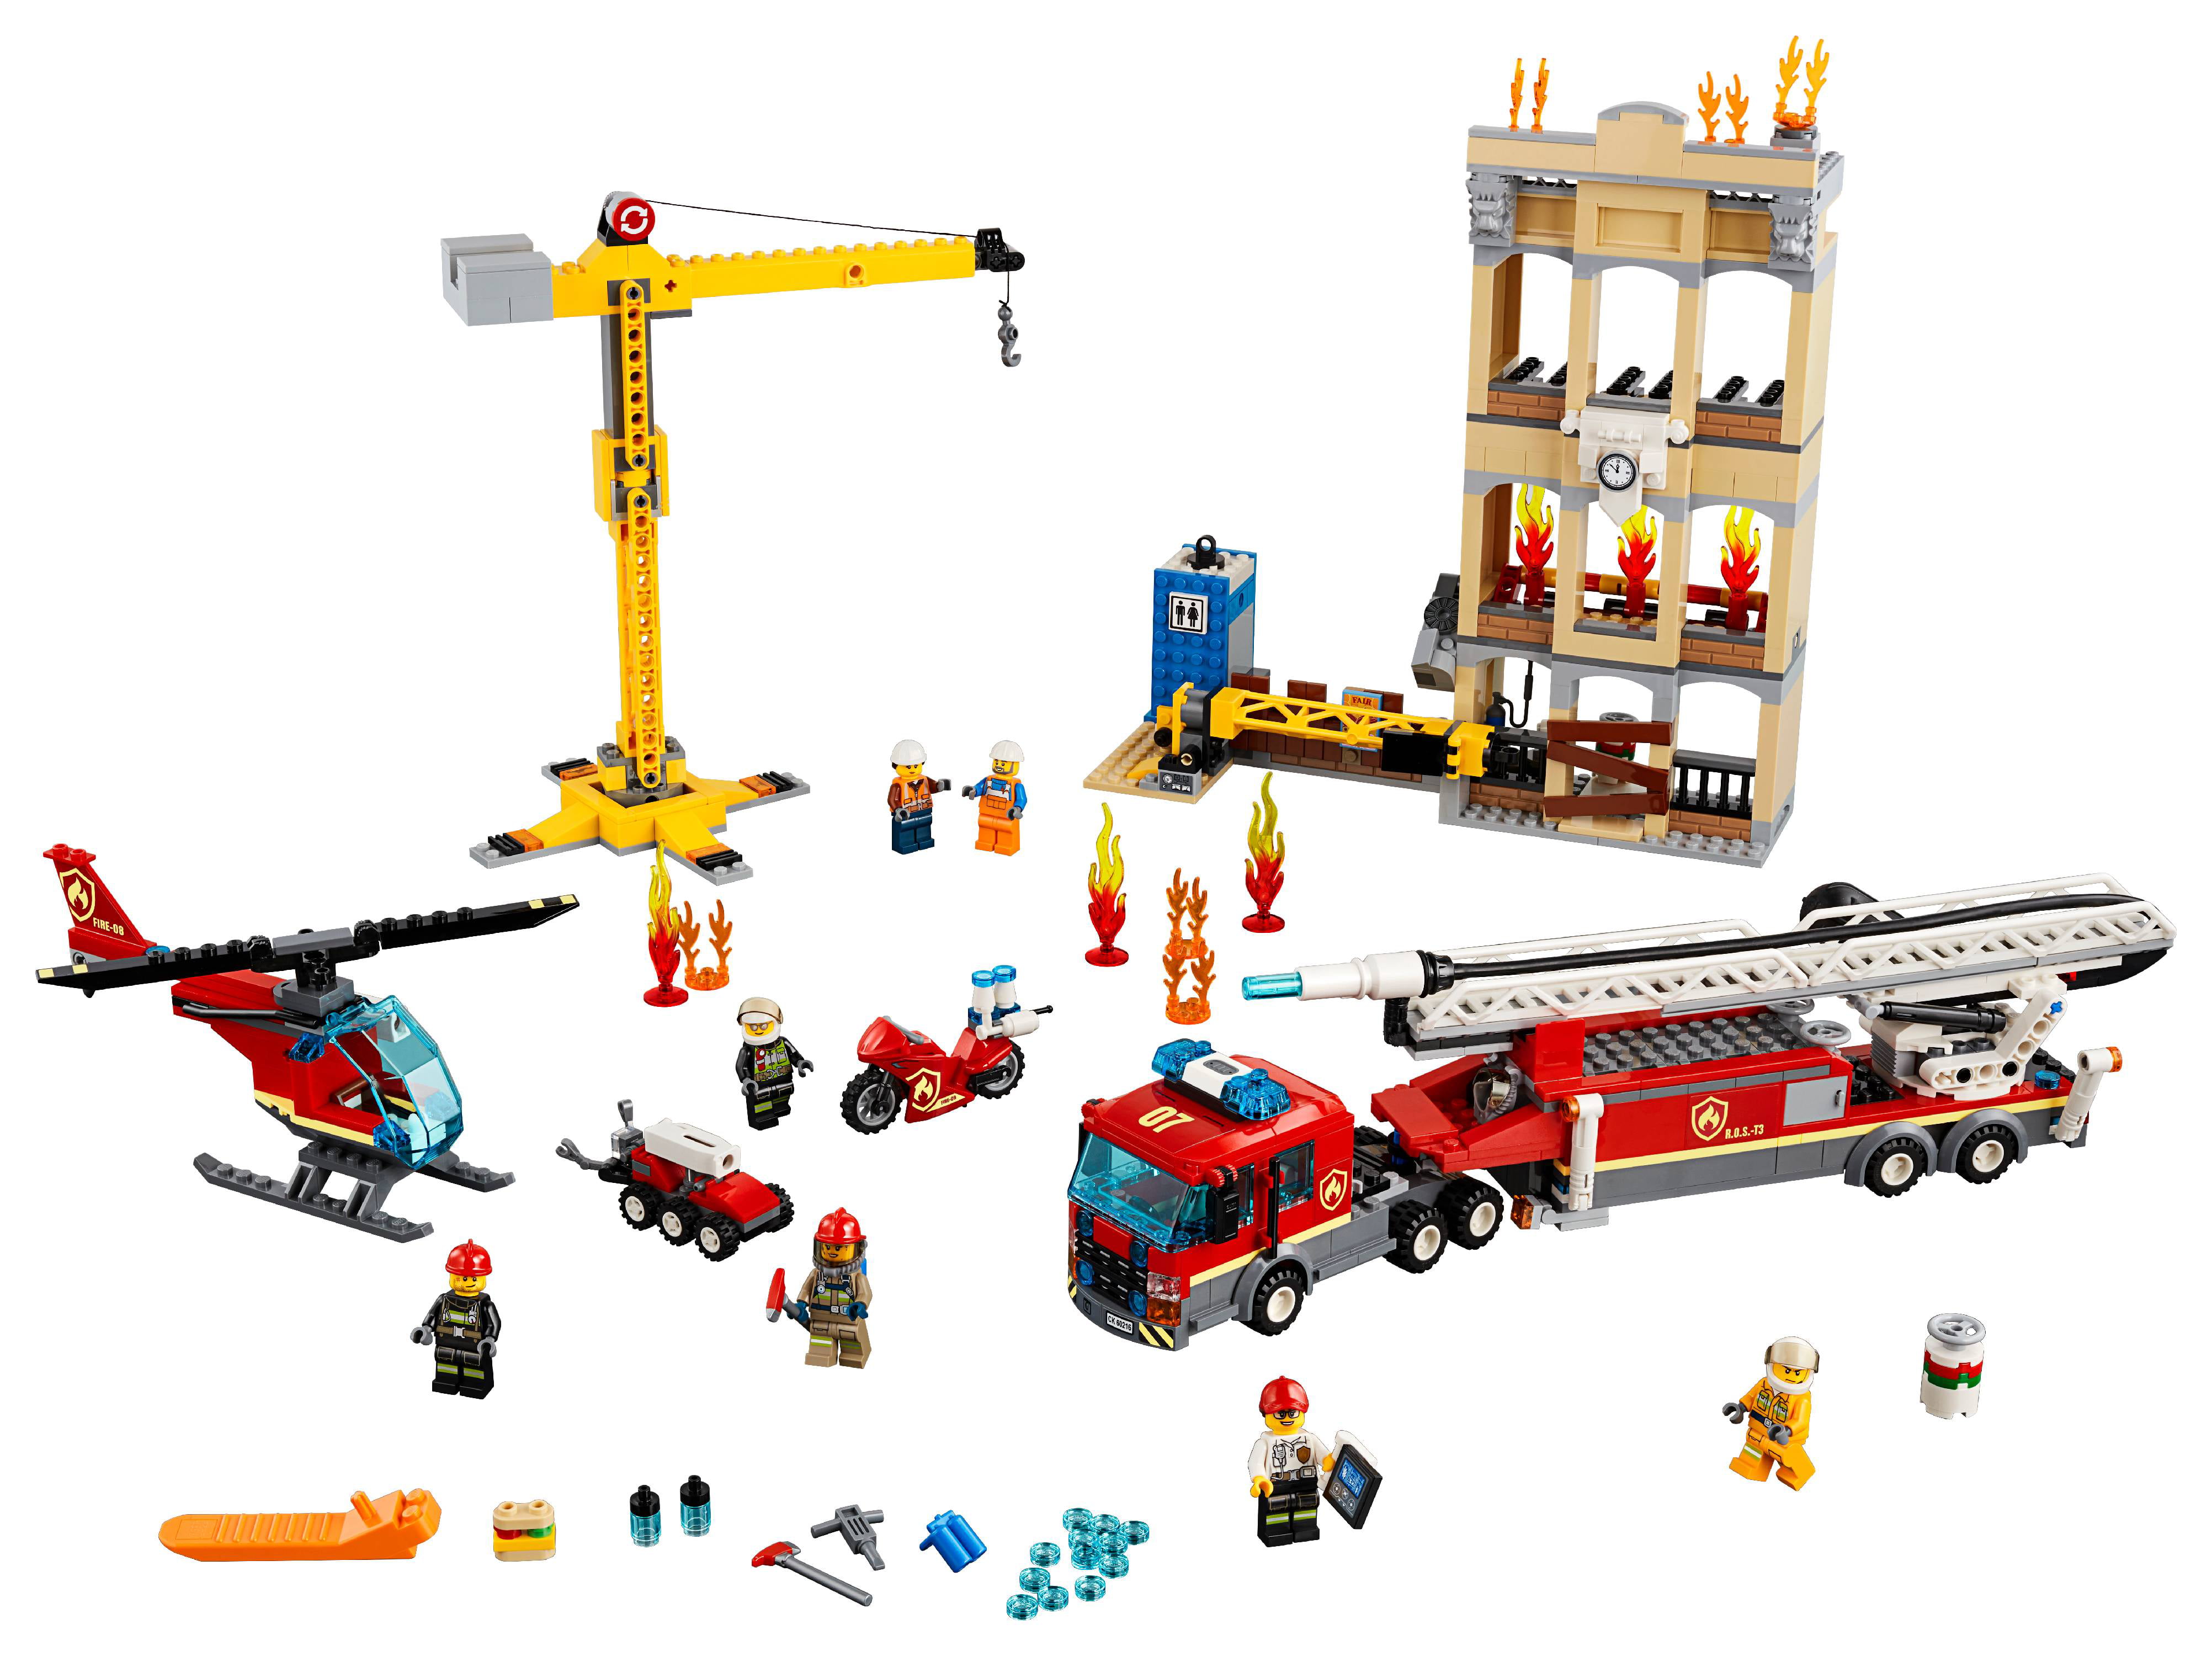 LEGO Fire Brigade 60216 Firetruck and Rescue Toy - Walmart.com